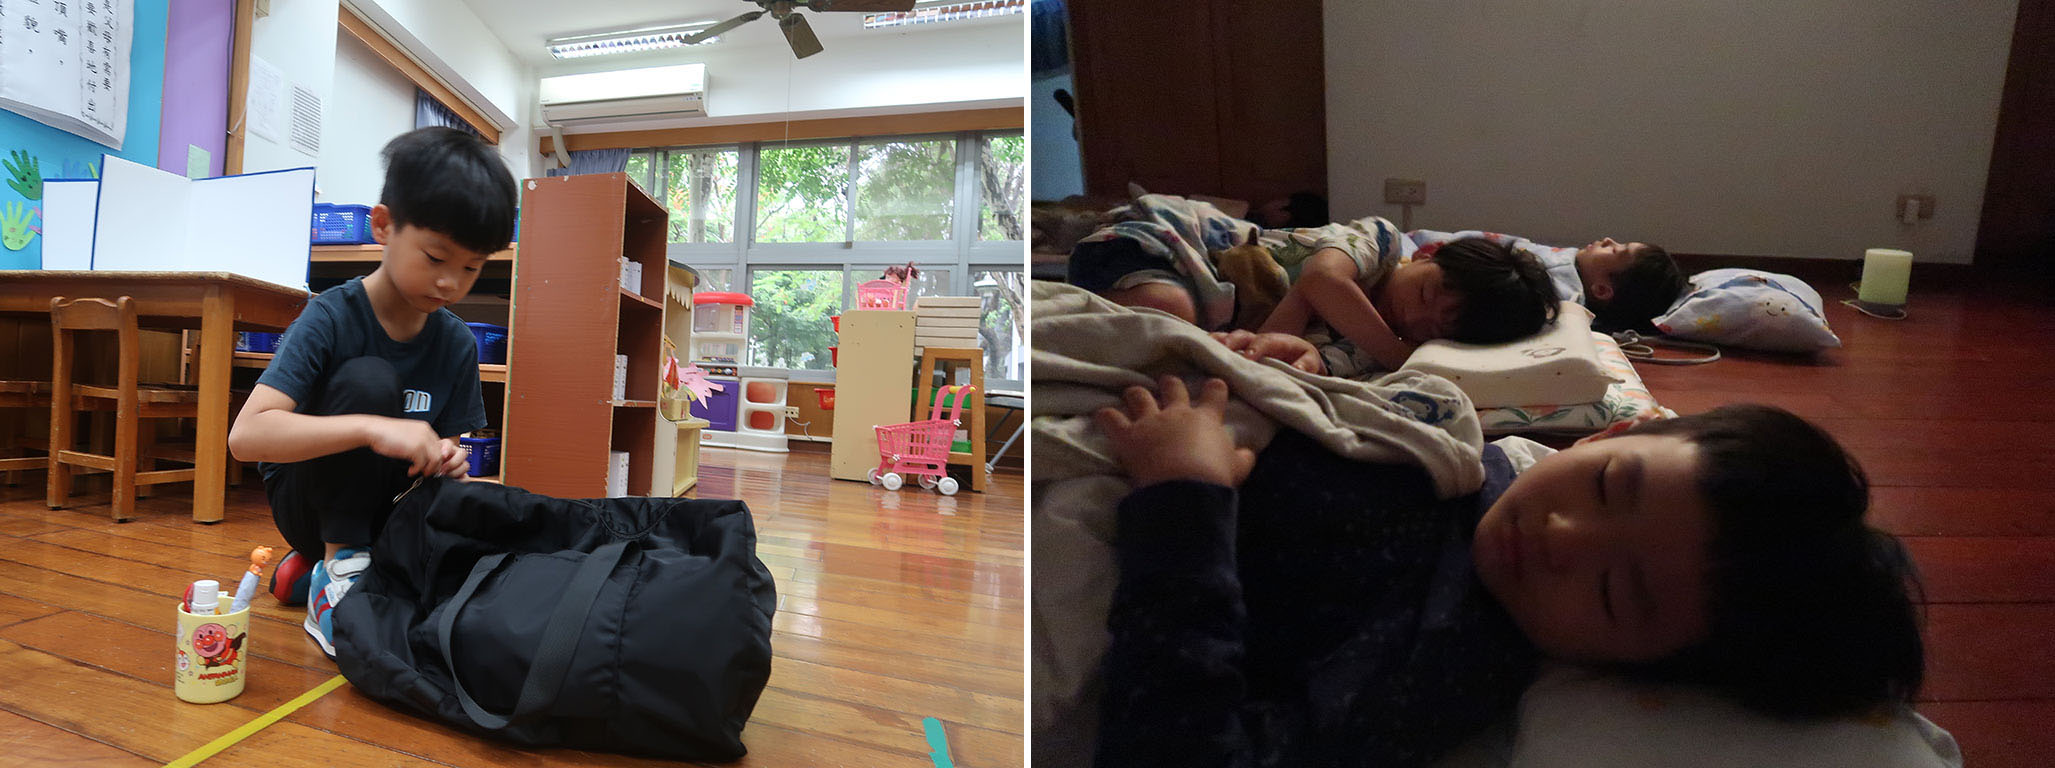 離開爸媽的第一晚，在老師和同學陪伴下安穩入睡。隔天起床，寶貝自己整理行李，展現獨立的一面。